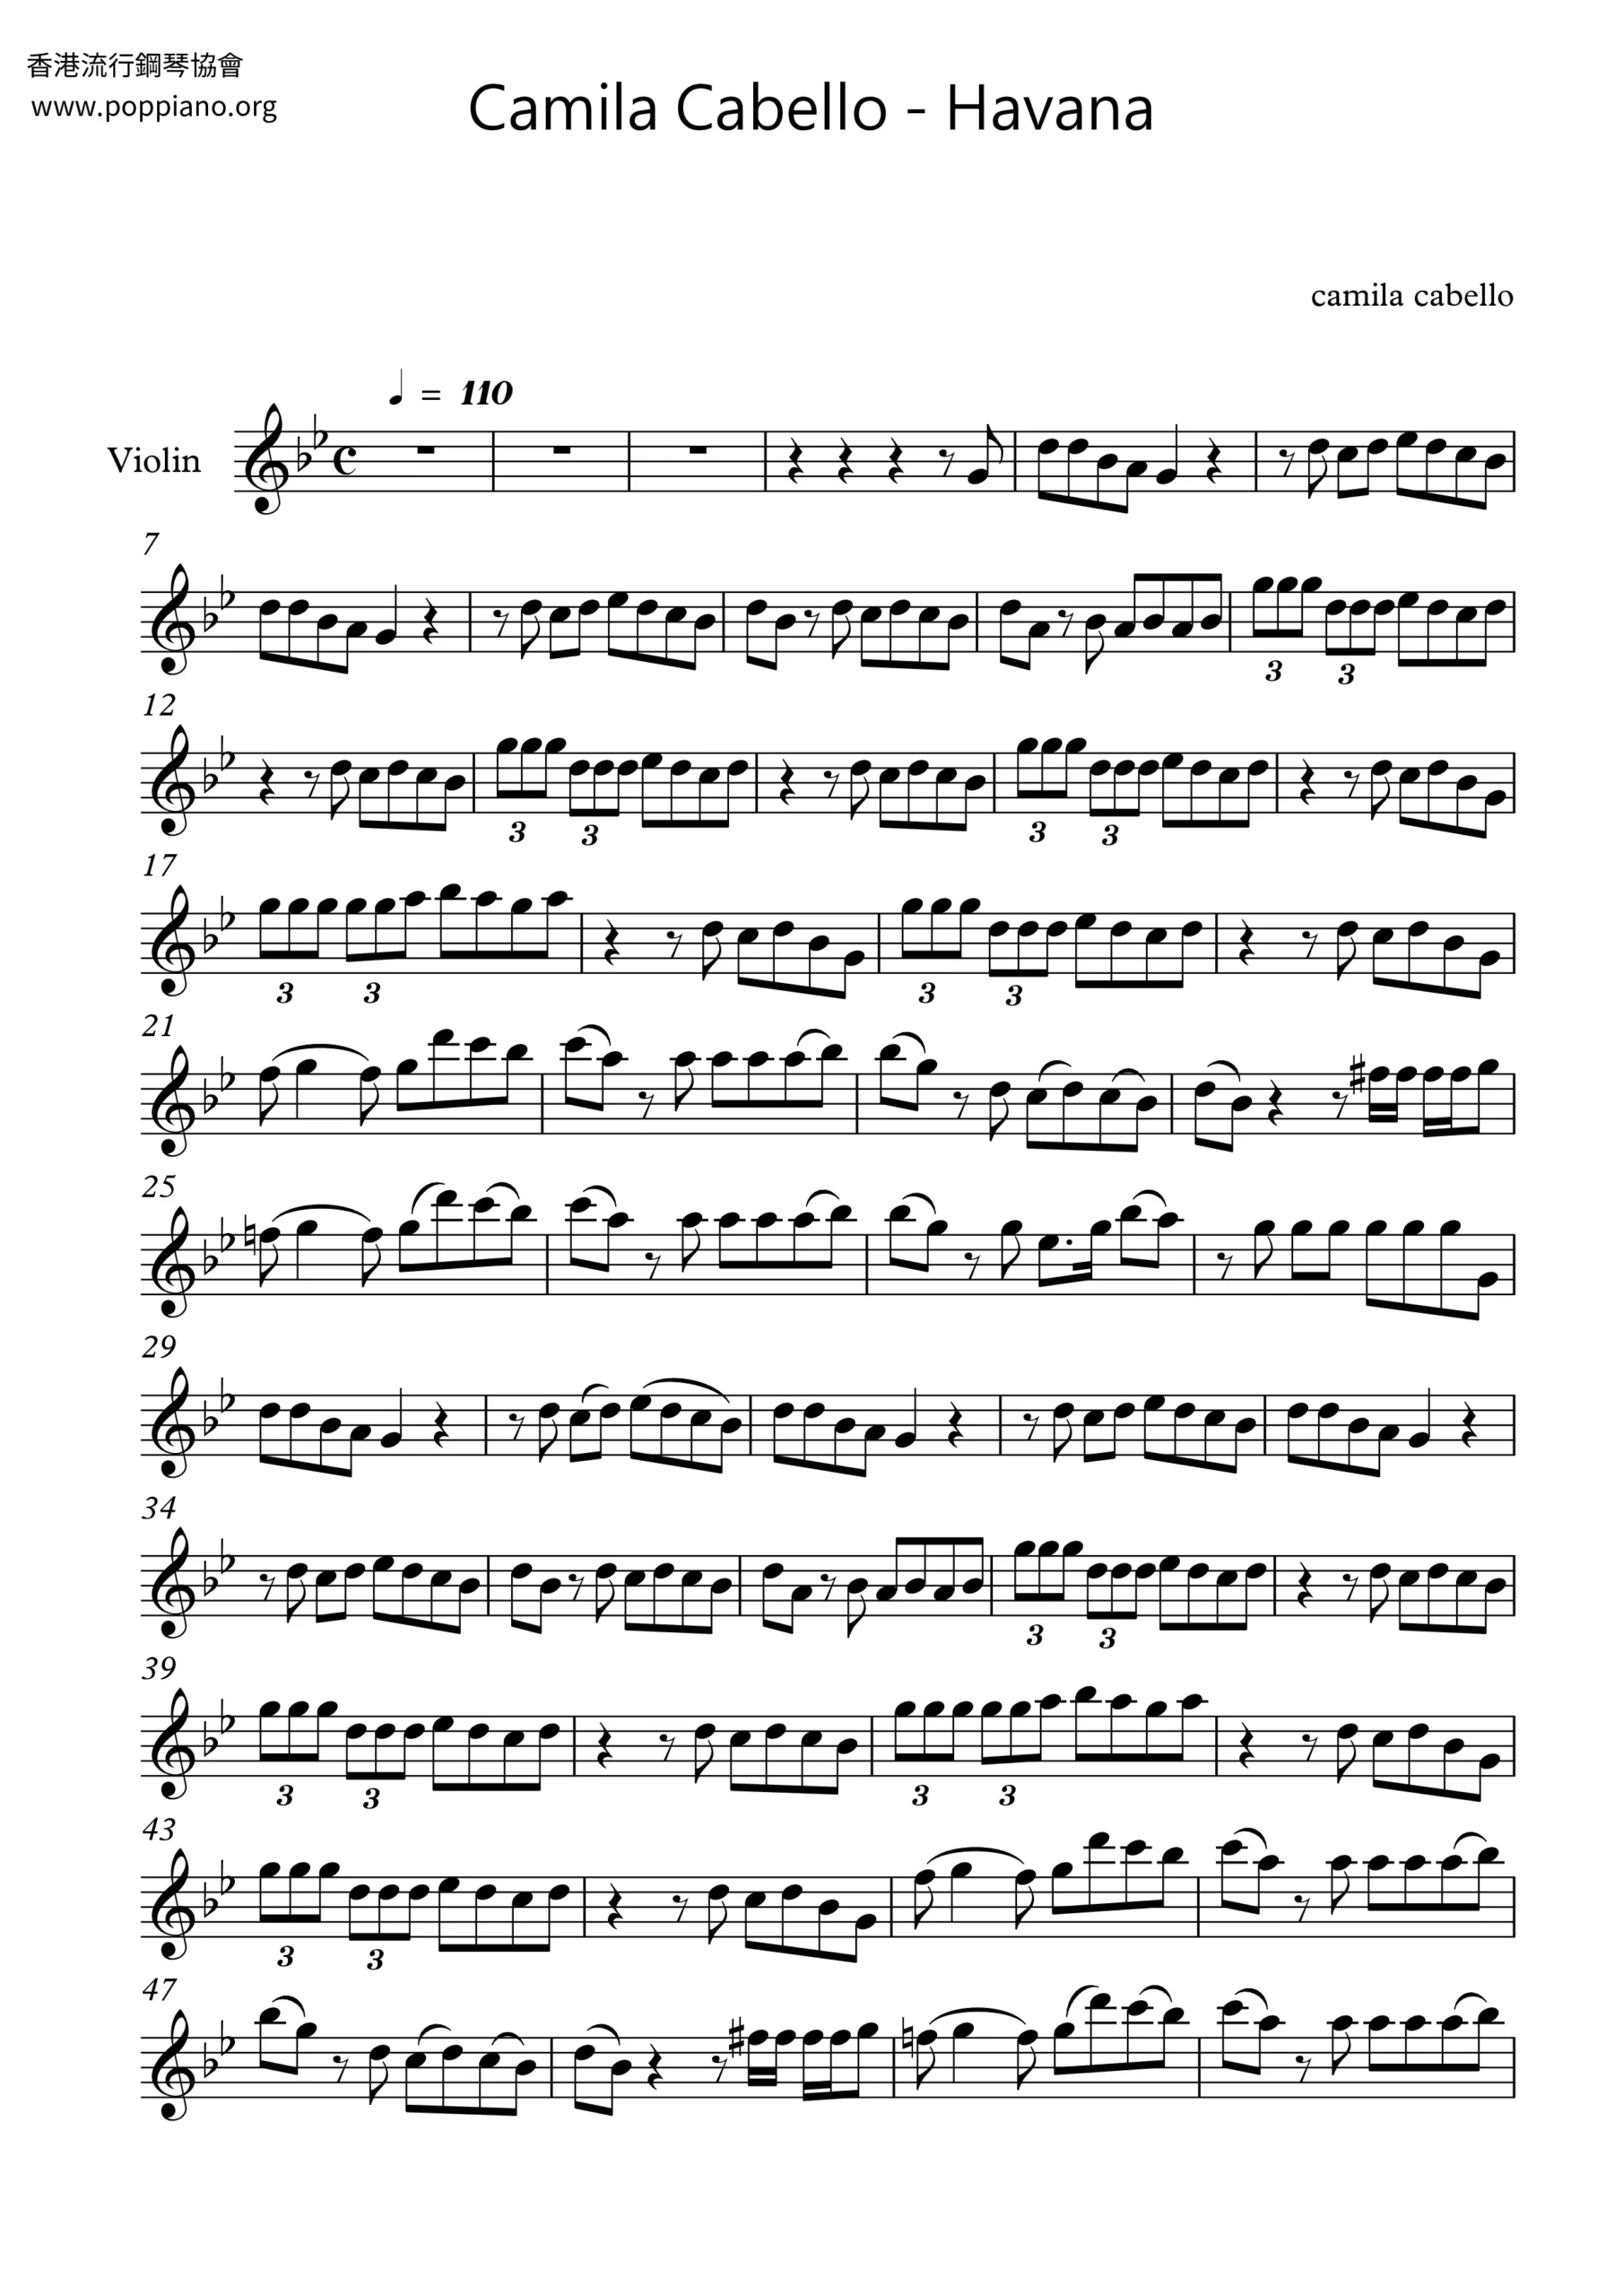 havana partitura violin - How do you memorize violin notes